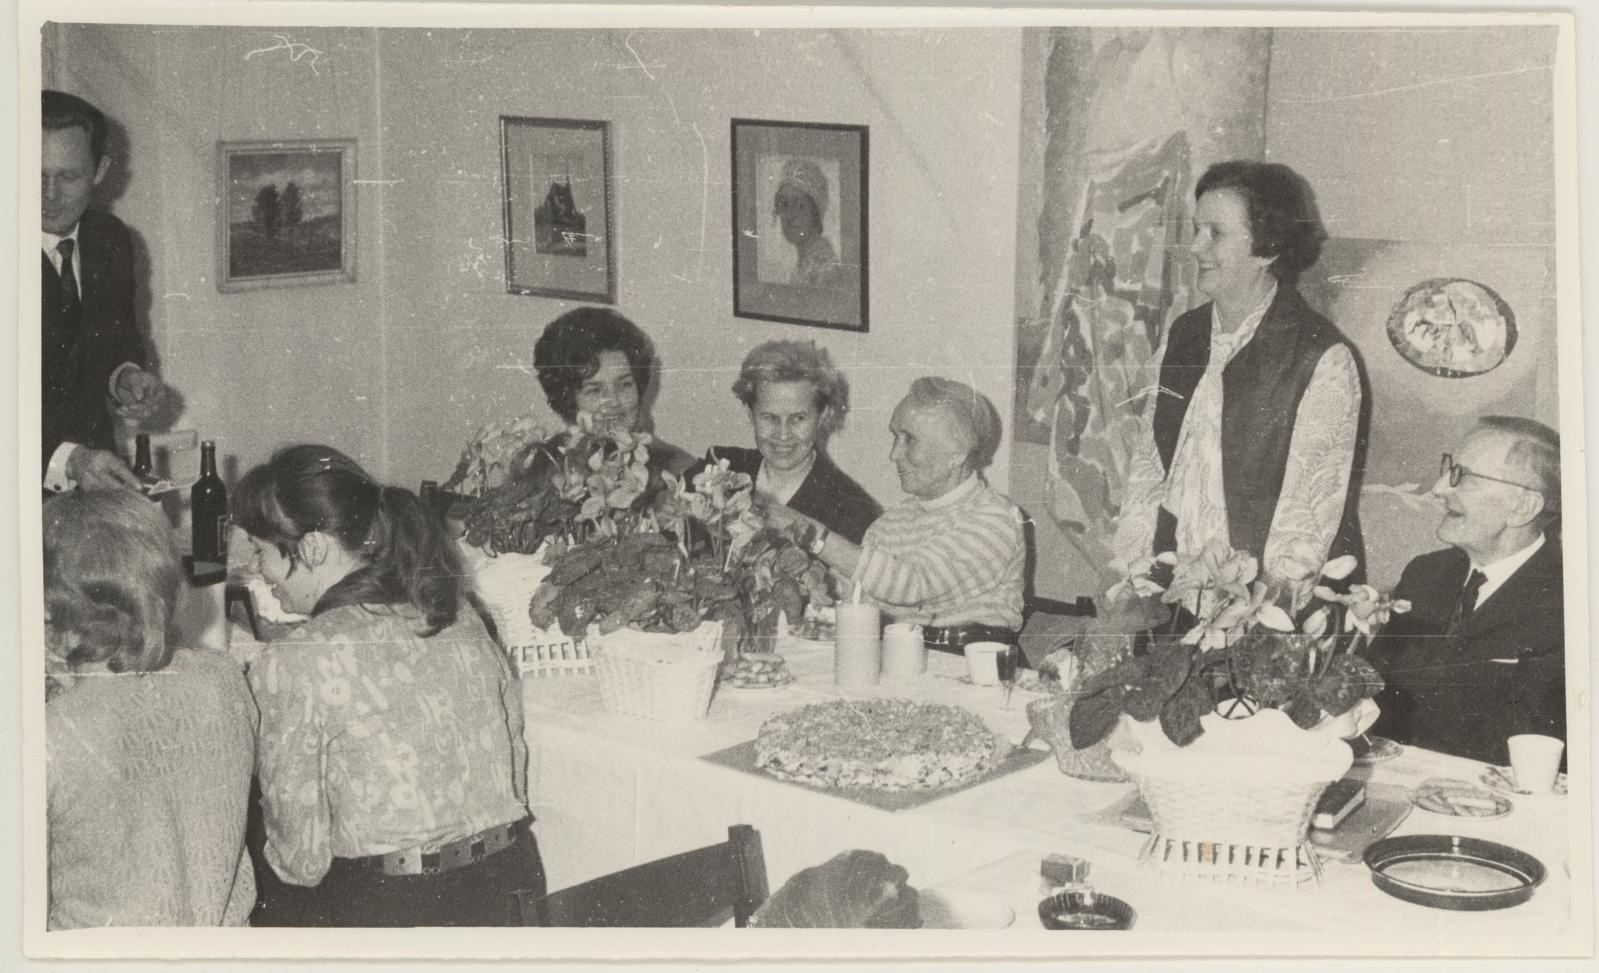 Direktor Vaike Tiigi 50-aasta juubeli tähistamine 6.detsembril (tegelikult 22.november) 1971. Juubilari sõnavõtt